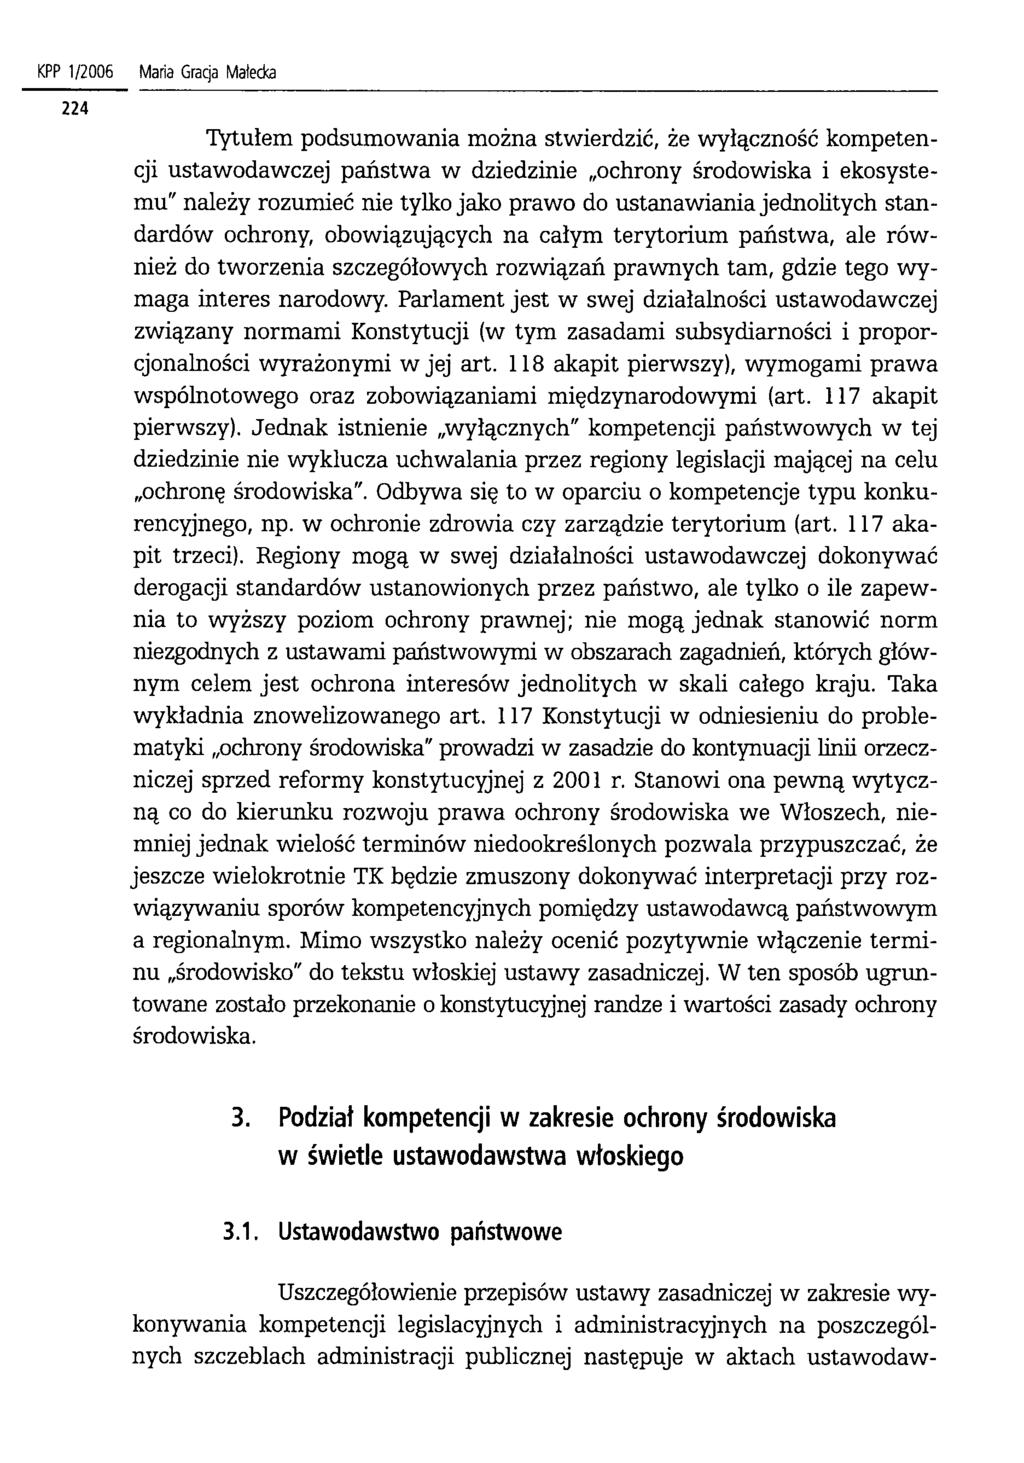 KPP 1/2006 Maria Gracja Małecka Tytułem podsumowania można stwierdzić, że wyłączność kompetencji ustawodawczej państw a w dziedzinie ochrony środowiska i ekosystemu" należy rozumieć nie tylko jako